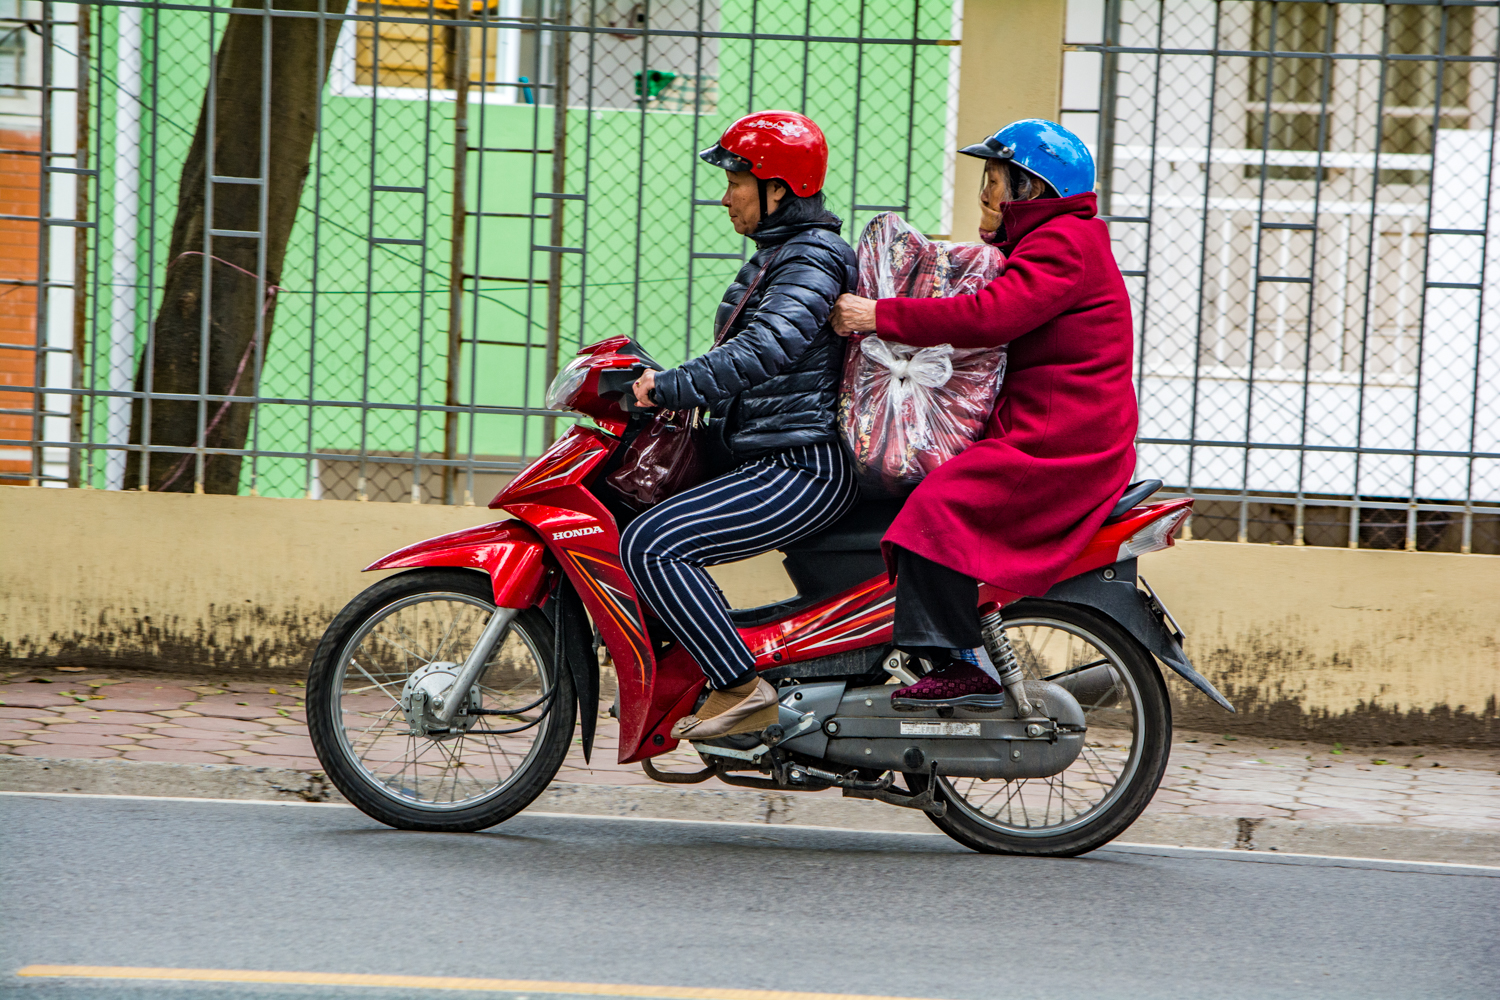 Scooter Vietnam Vagabond Way